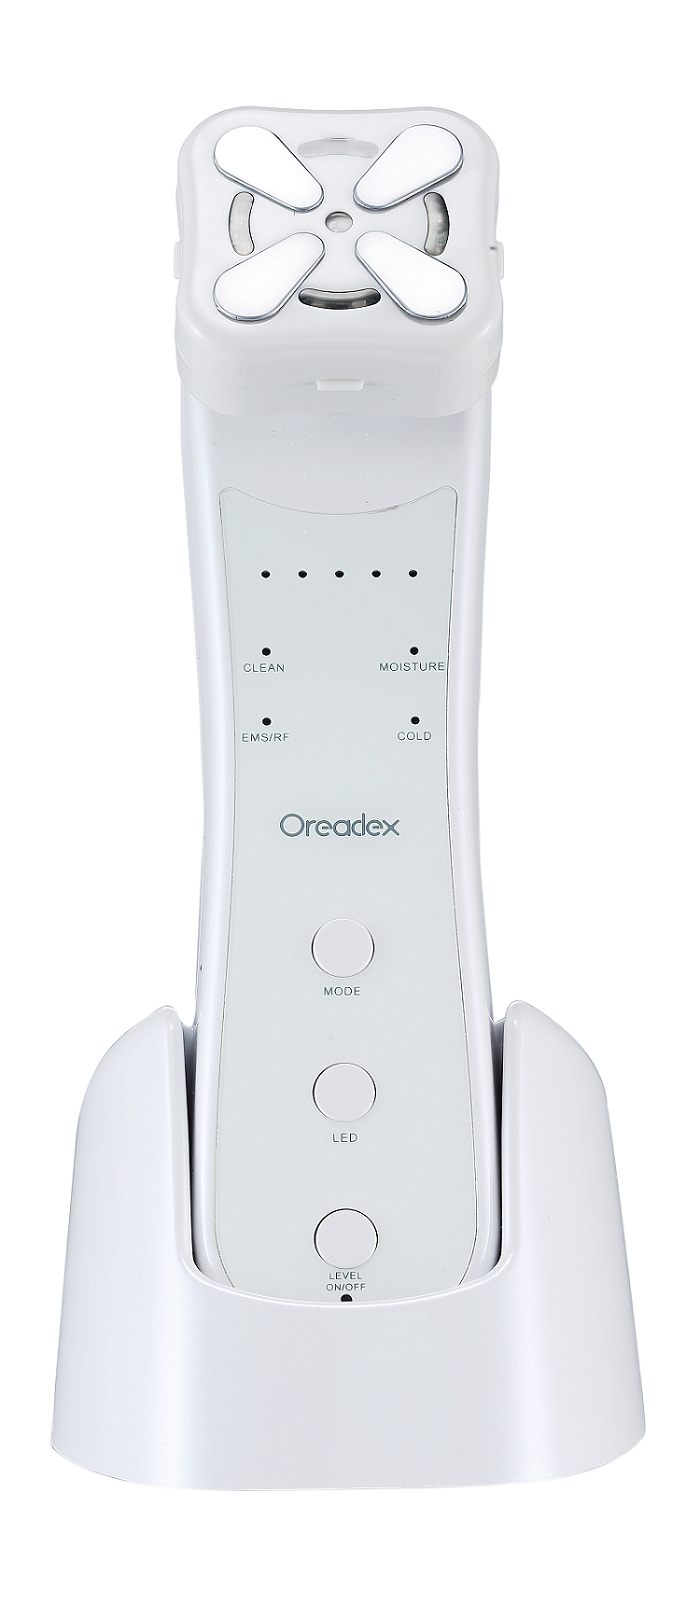 母親節禮物2022推薦之Oreadex RF射頻美容儀.